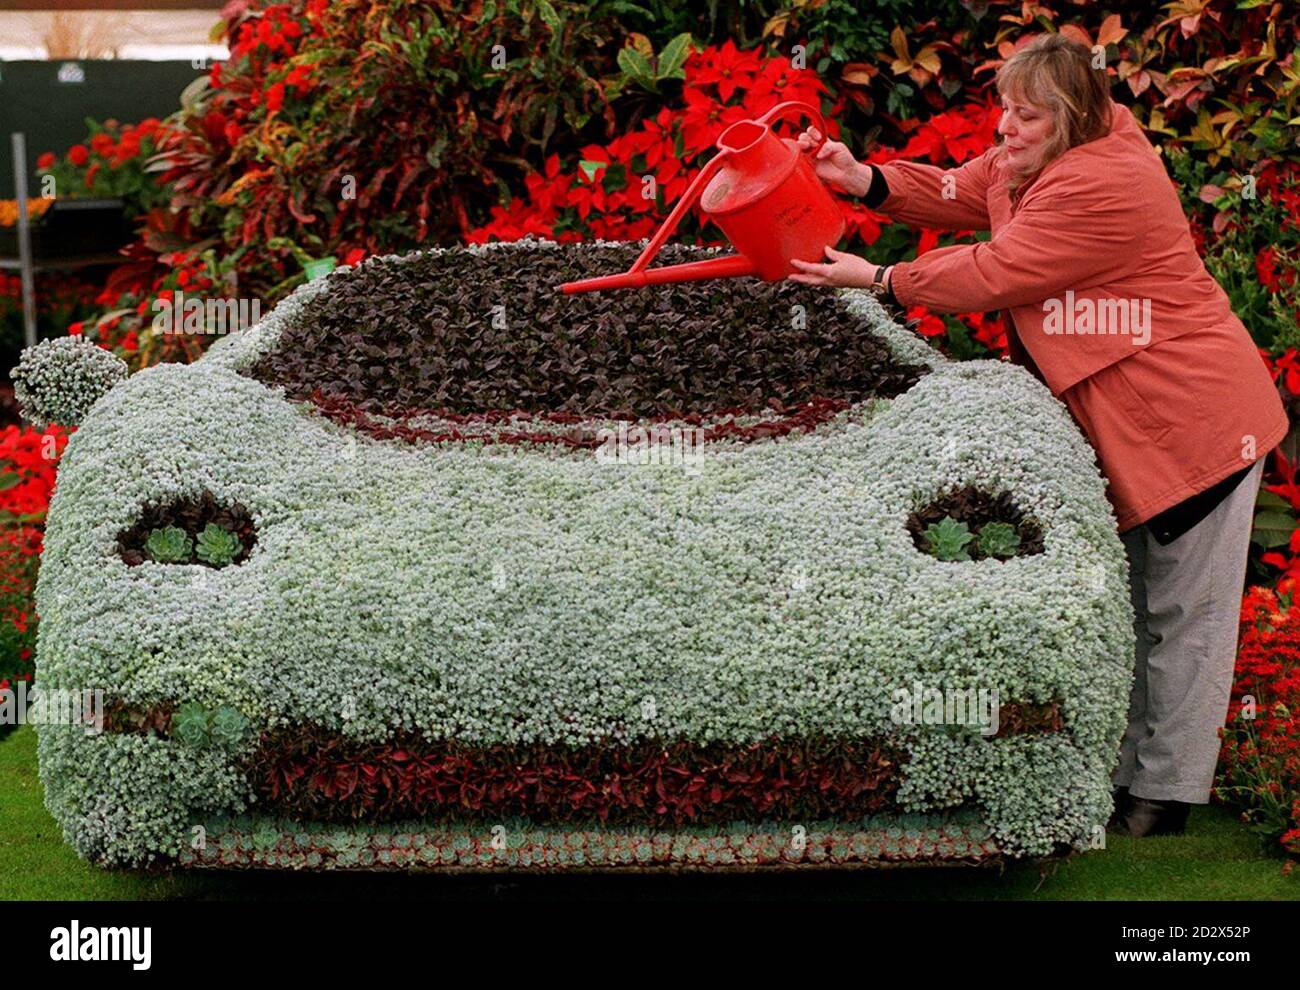 Averill Cooke bewässert ein Blumenmodell des Jaguar XJ220 im Vorfeld der morgigen Chelsea Flower Show in London. Das Modell wurde aus einem Stahlrahmen mit Kapillarmattierung und einer Kompostschicht hergestellt. Der Rahmen wurde dann mosiert und mit Hühnerdraht bedeckt, bevor 10,000 silberne Sedum-Teppichbettpflanzen einzeln per Hand in jede Hühnerdrahtzelle gepflanzt wurden. Stockfoto